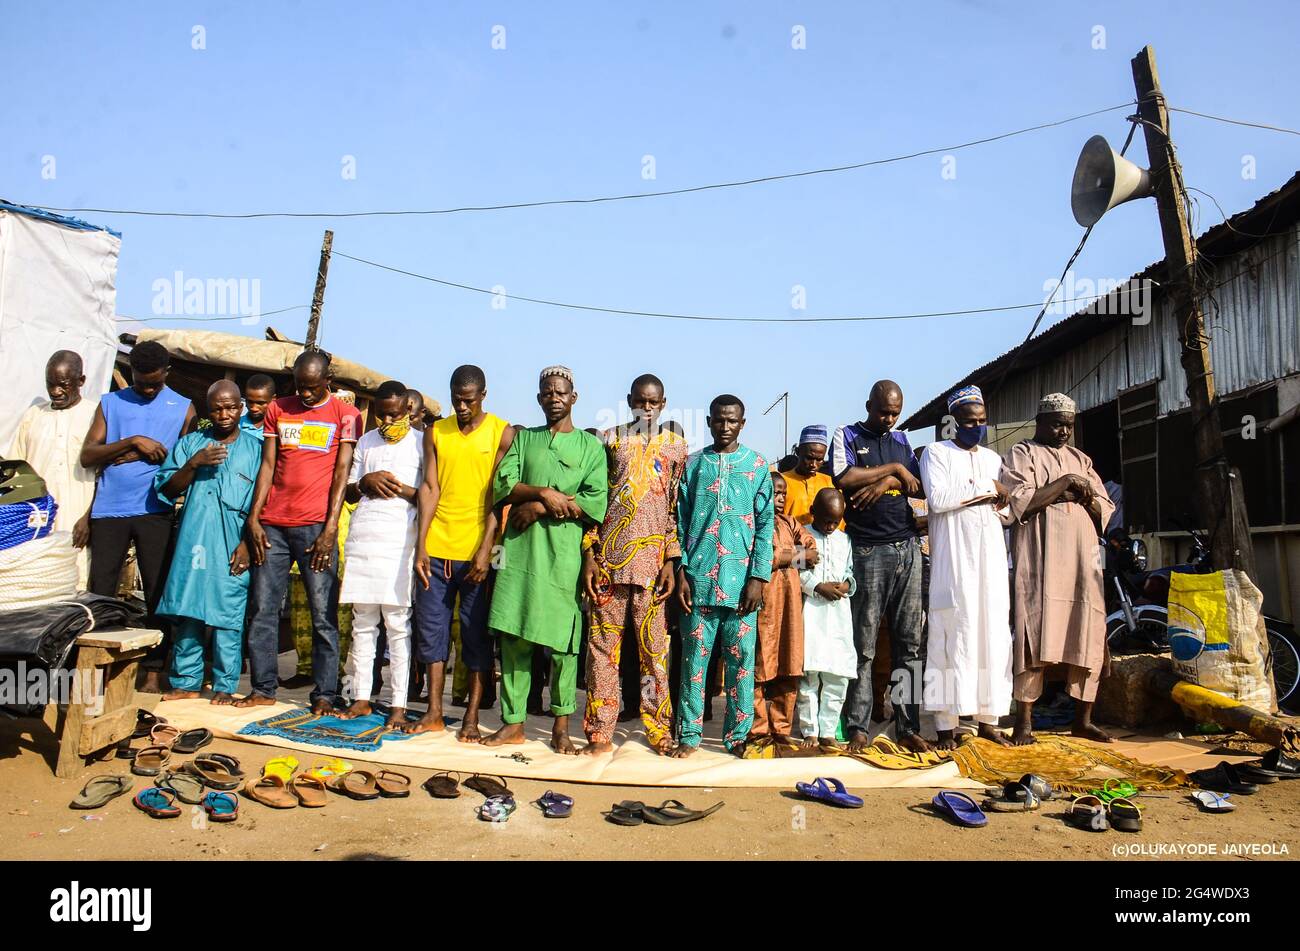 La gente prega nei locali di una moschea per celebrare il musulmano Eid-al-Adha (Festival dei sacrifici) senza prendere misure precauzionali per frenare la diffusione del COVID-19, a Kara, Stato di Ogun, nel sud-ovest della Nigeria. Foto Stock